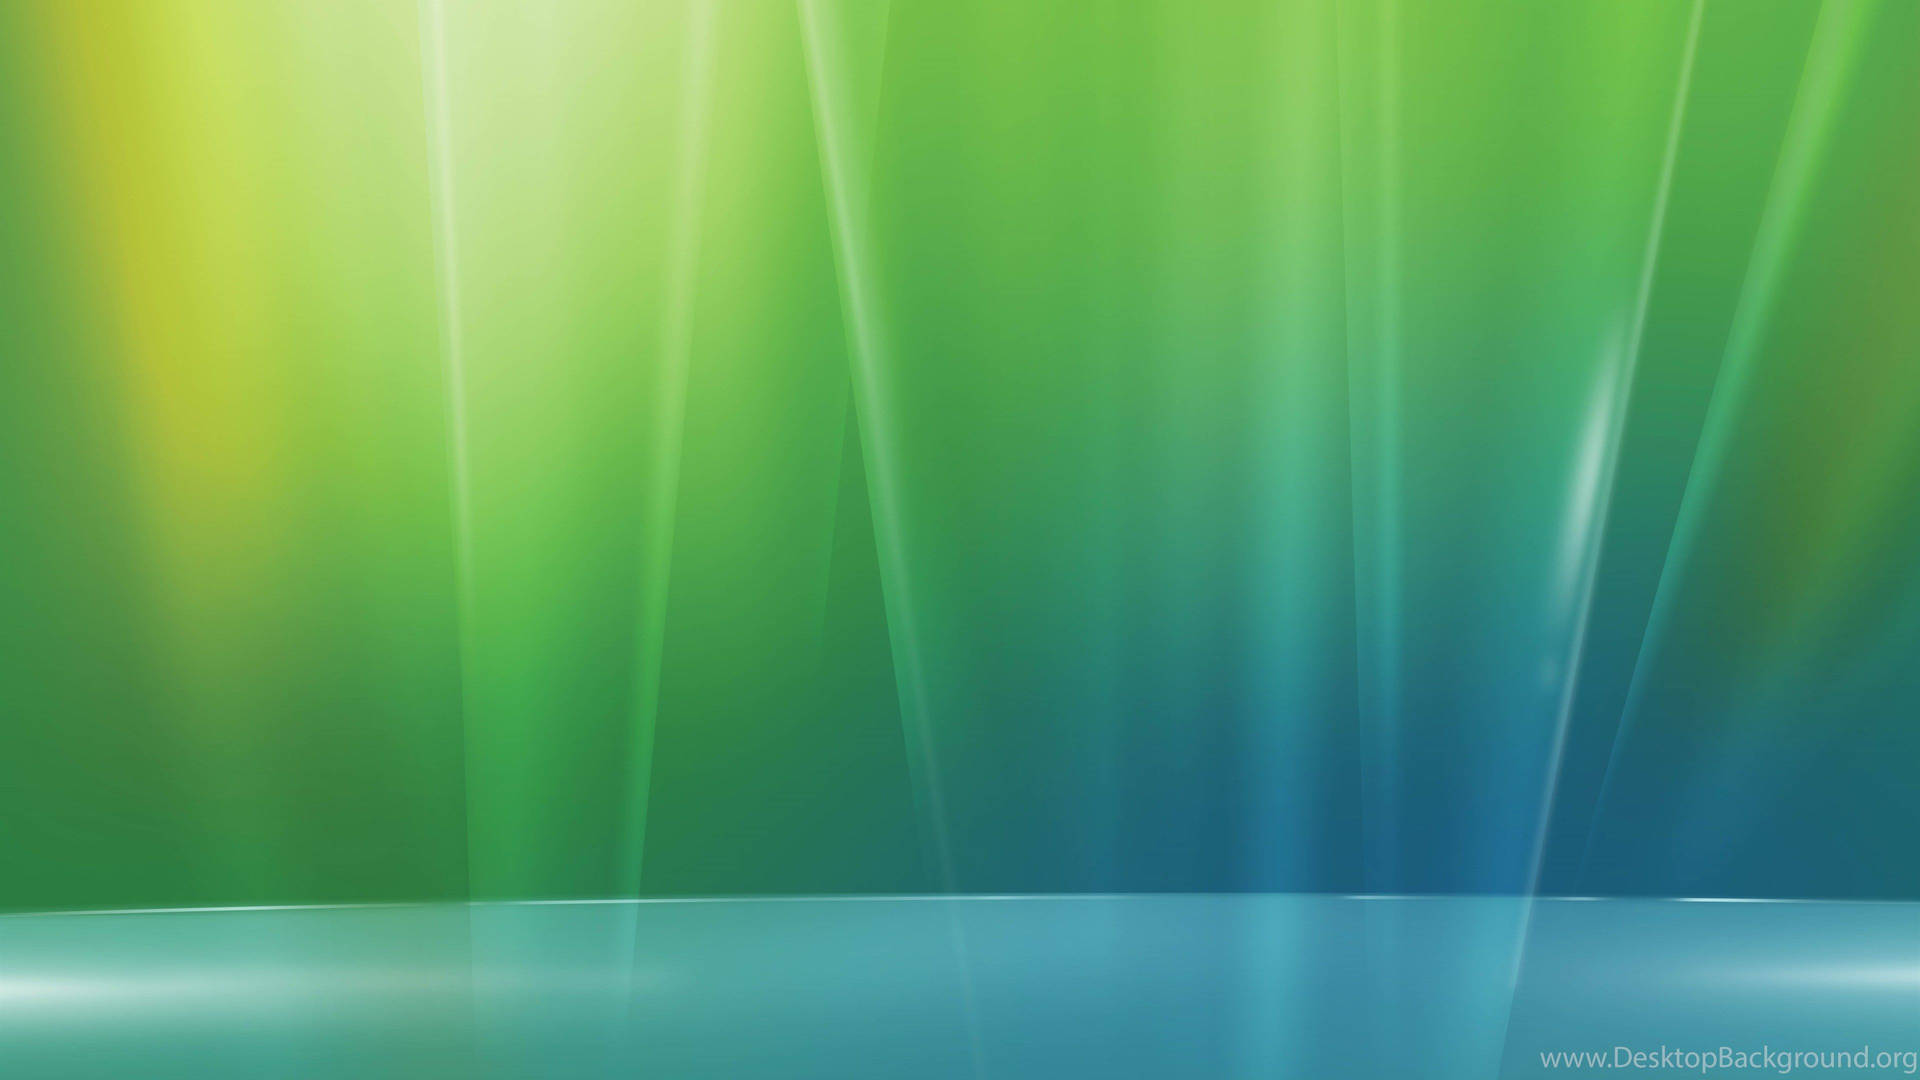 Aurora Windows Vista Background